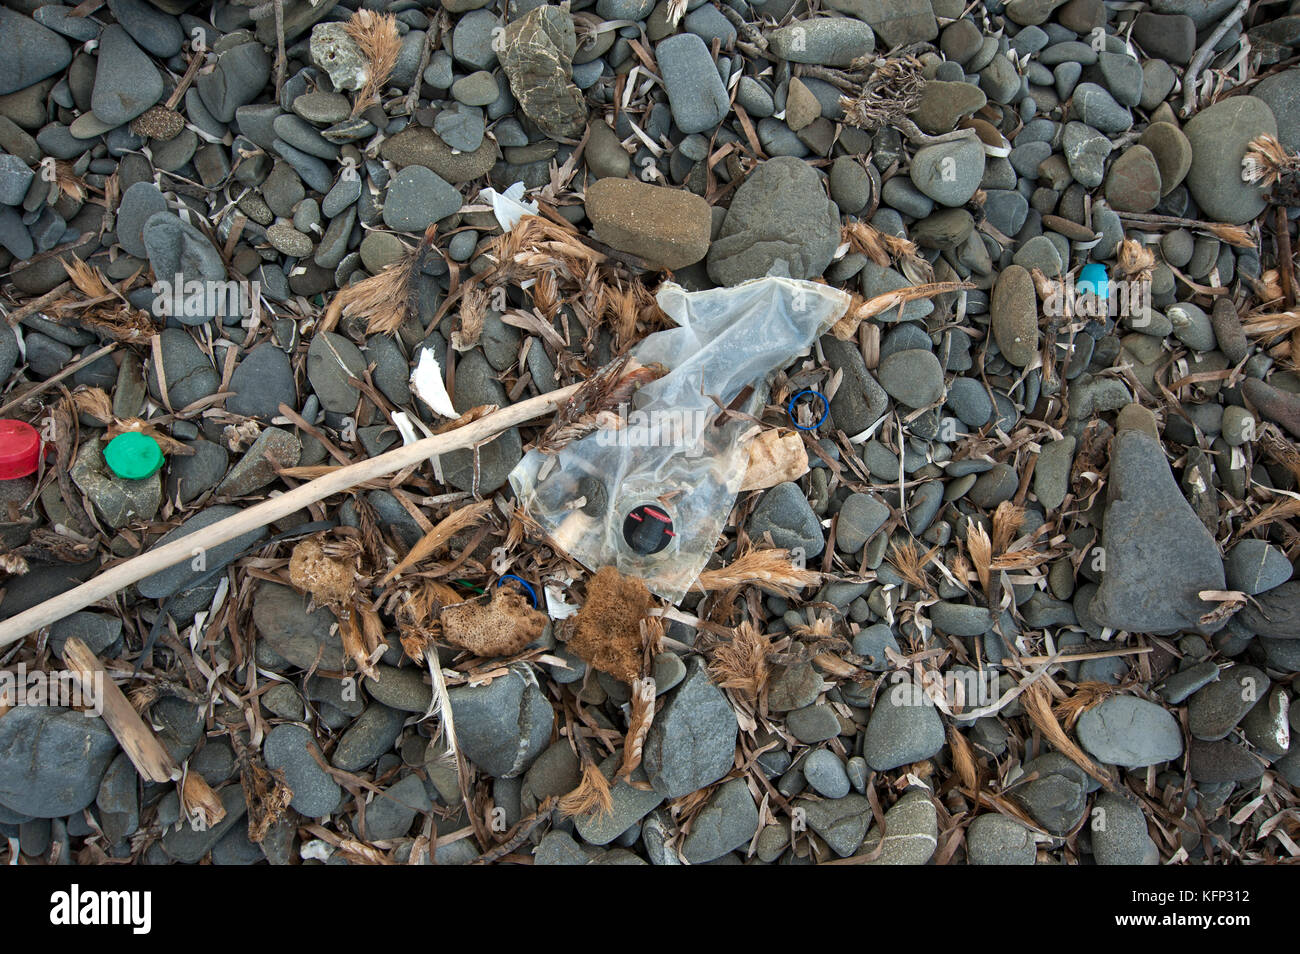 Un sac à vin en plastique et autres objets en plastique échoué sur une plage de galets sur l'île de Minorque en méditerranée Banque D'Images